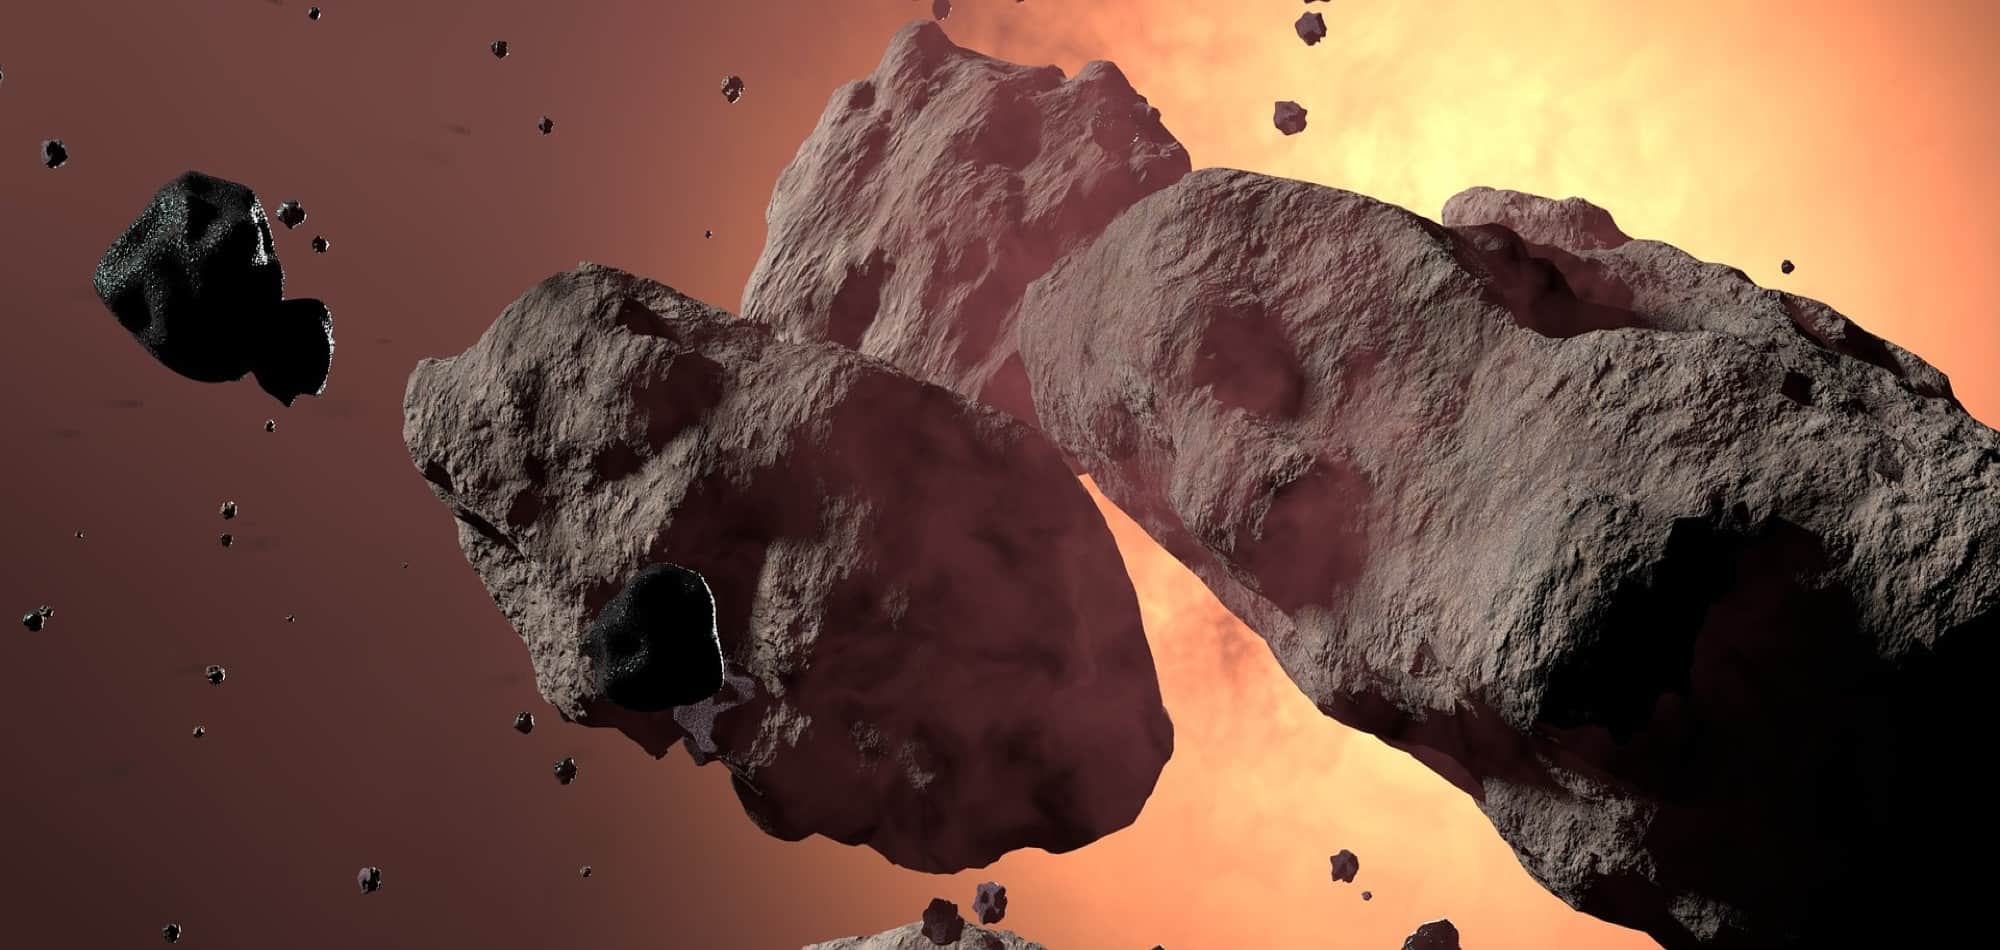  Το «βίαιο» ταξίδι ενός μετεωρίτη - Πότε θα διασωθεί ένας αστεροειδής που εισέρχεται στην ατμόσφαιρα της Γης;